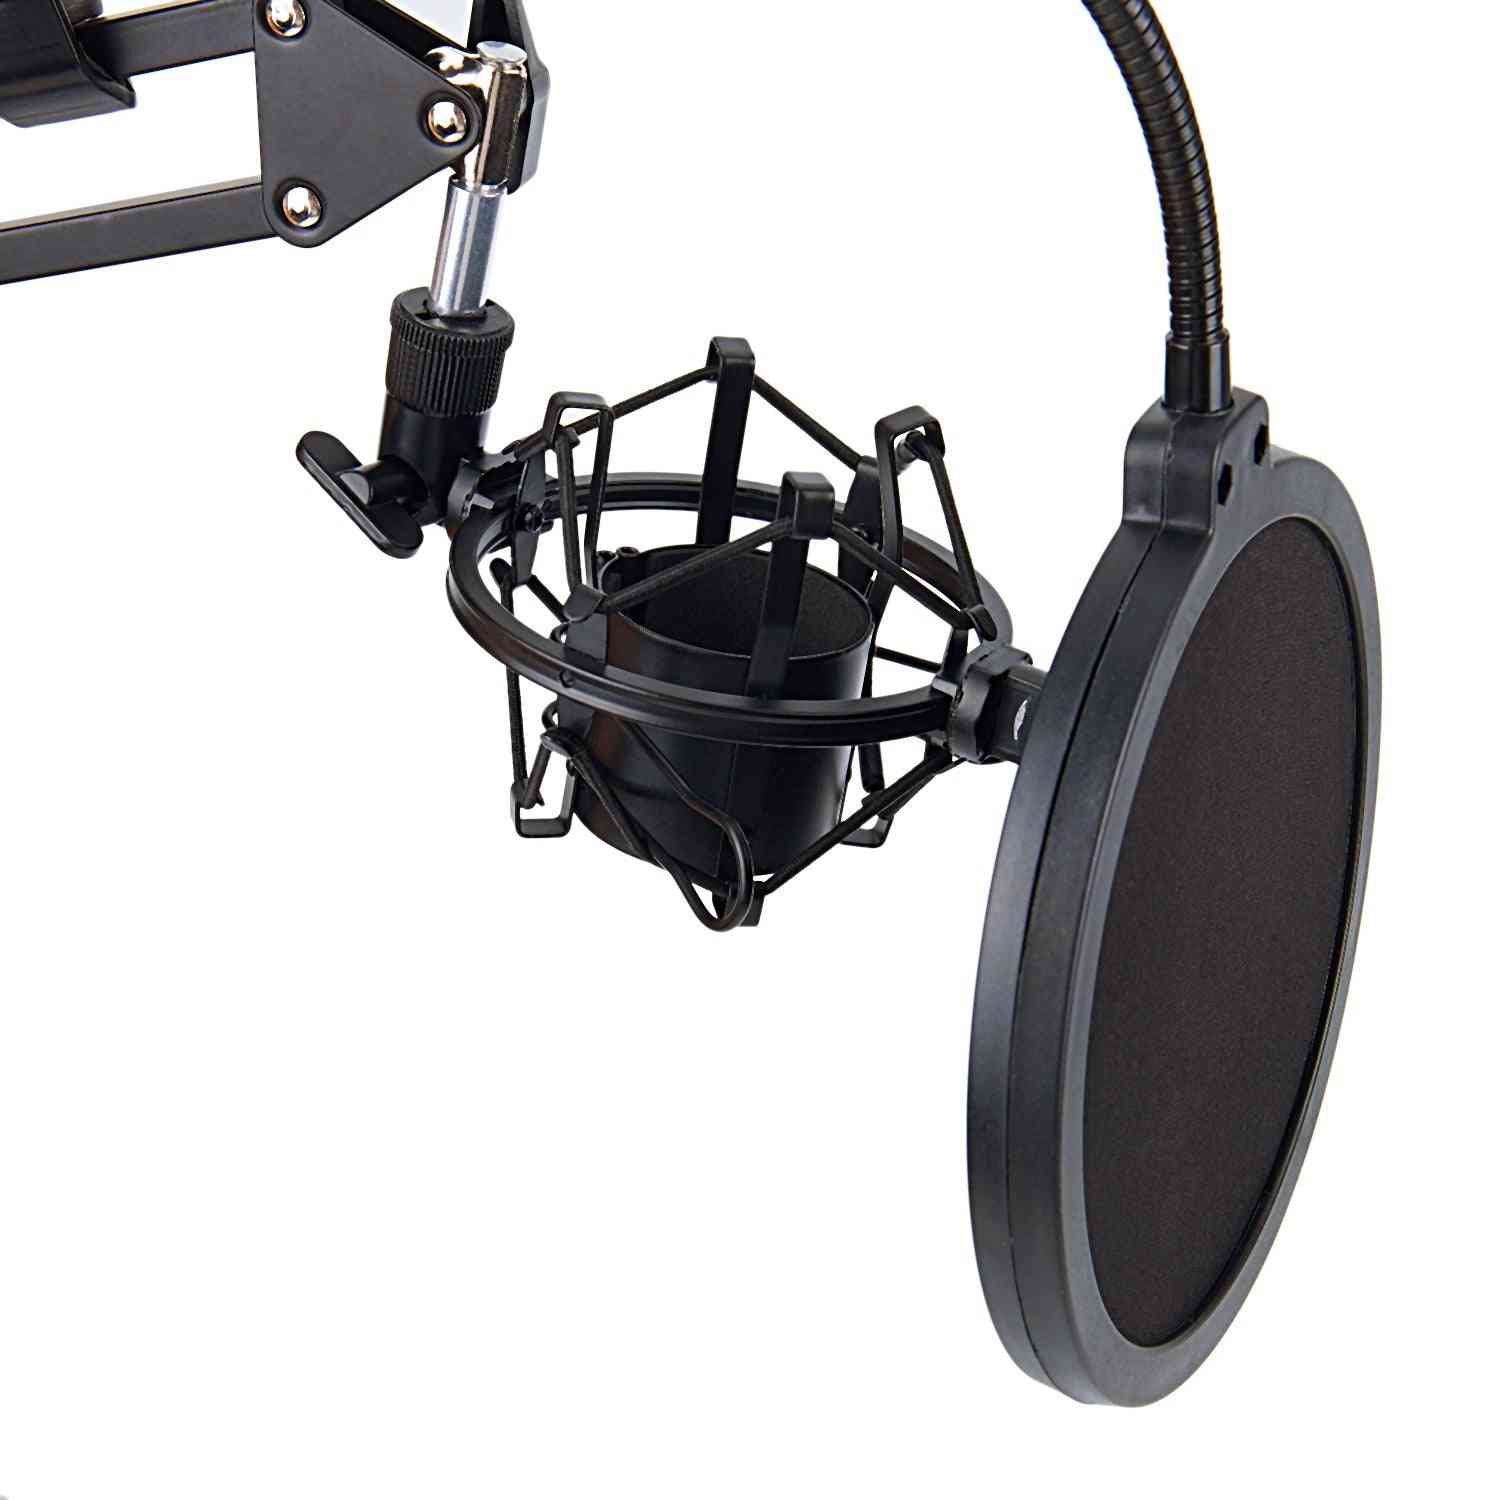 Nb-35 soporte de brazo de tijera para micrófono y abrazadera de montaje en mesa